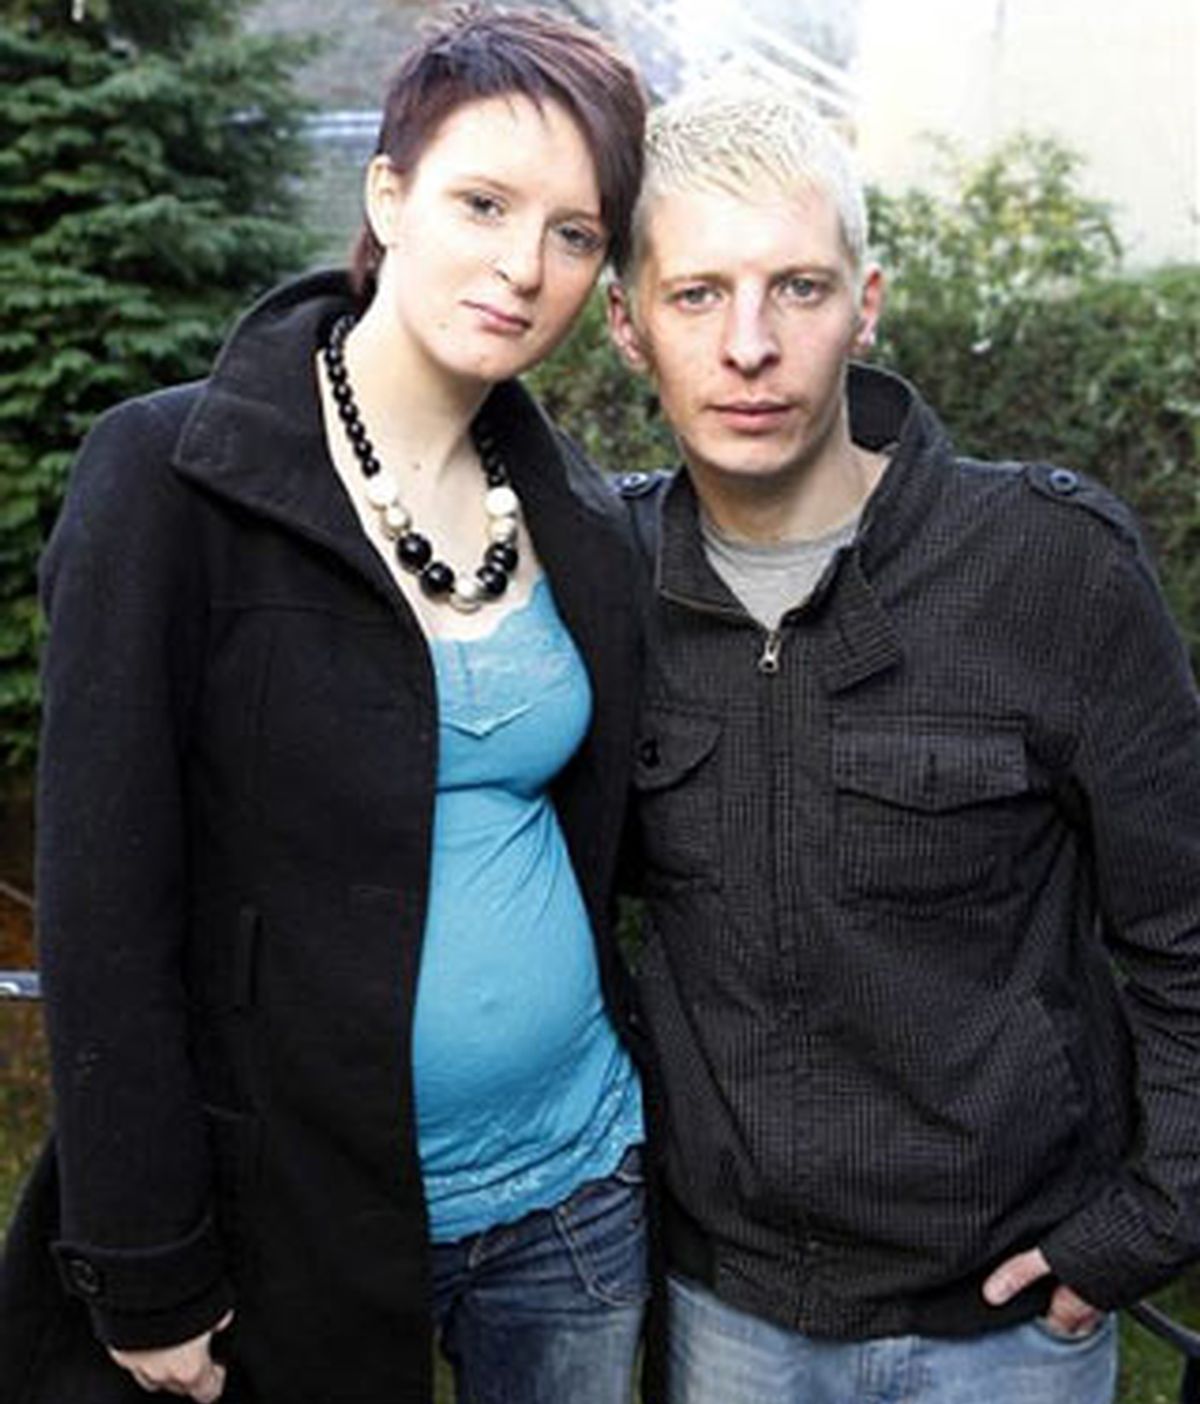 Imagen reciente de la pareja publicada por el Daily Mail. Foto: Daily Mail